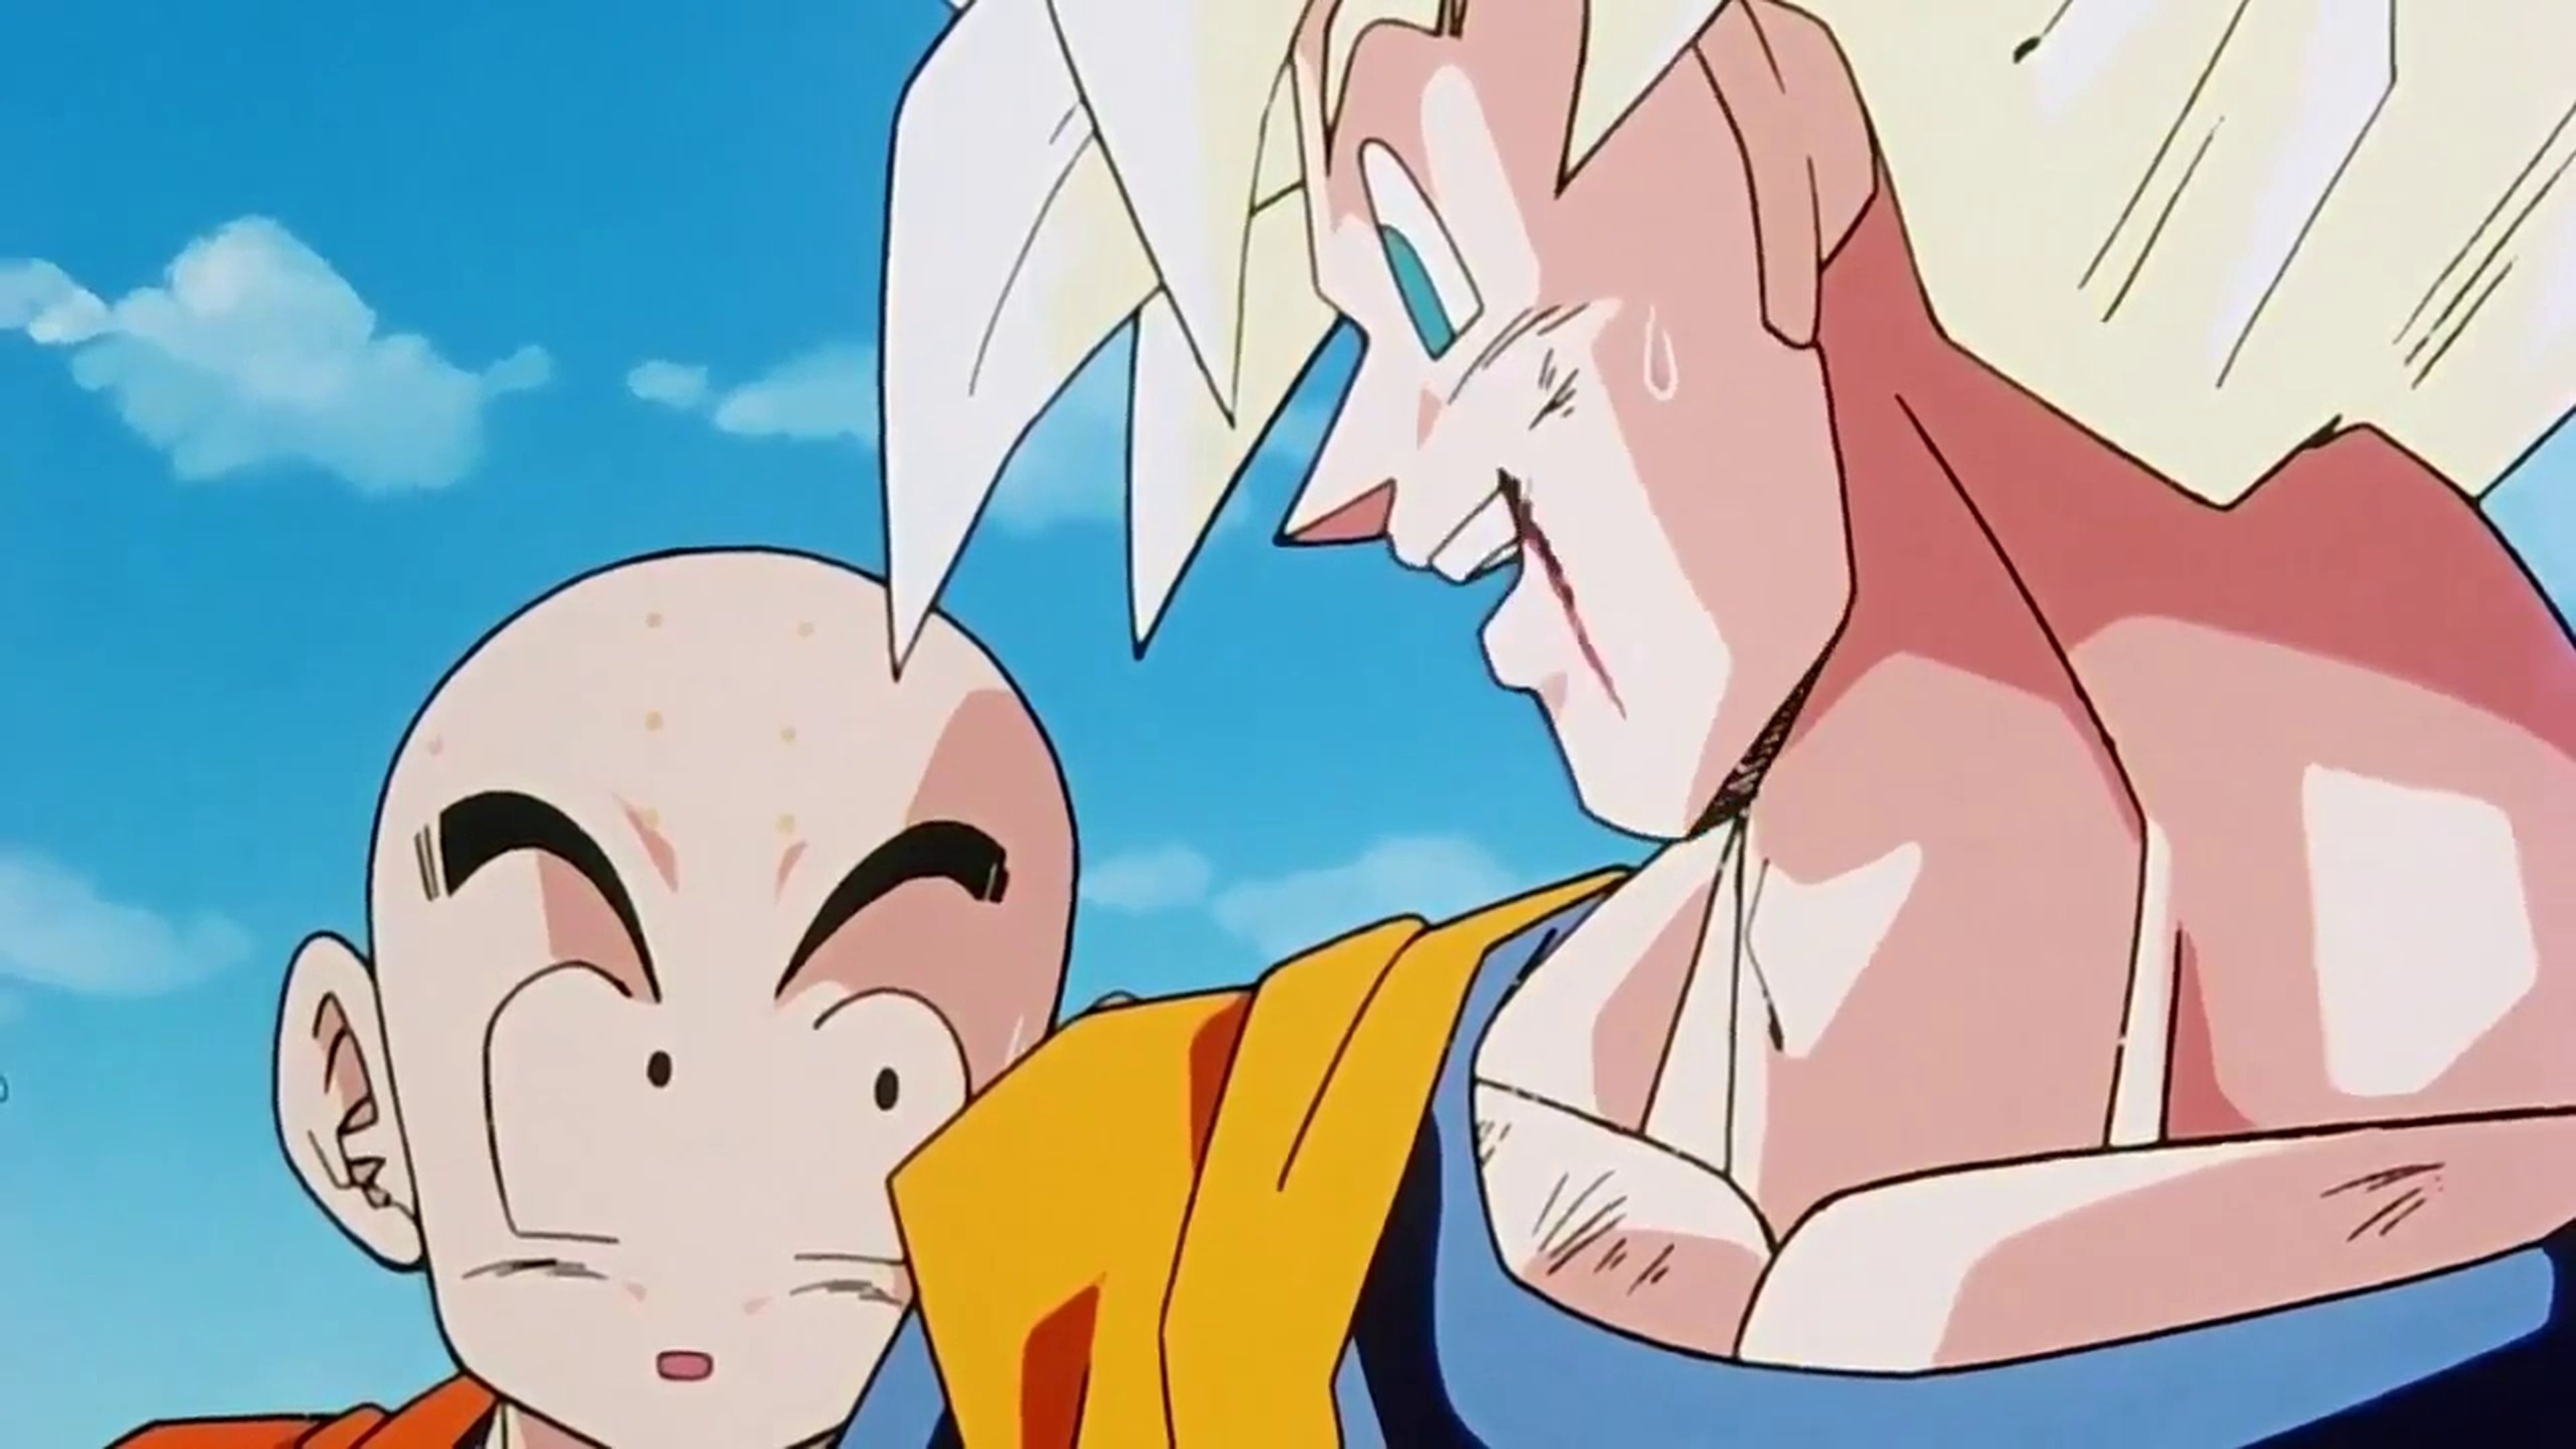 Goku le da una semilla senzu a Cell - Dragon Ball Z - Crítica del capítulo 181 en el que Gohan se enfrentó por primera vez a Cell